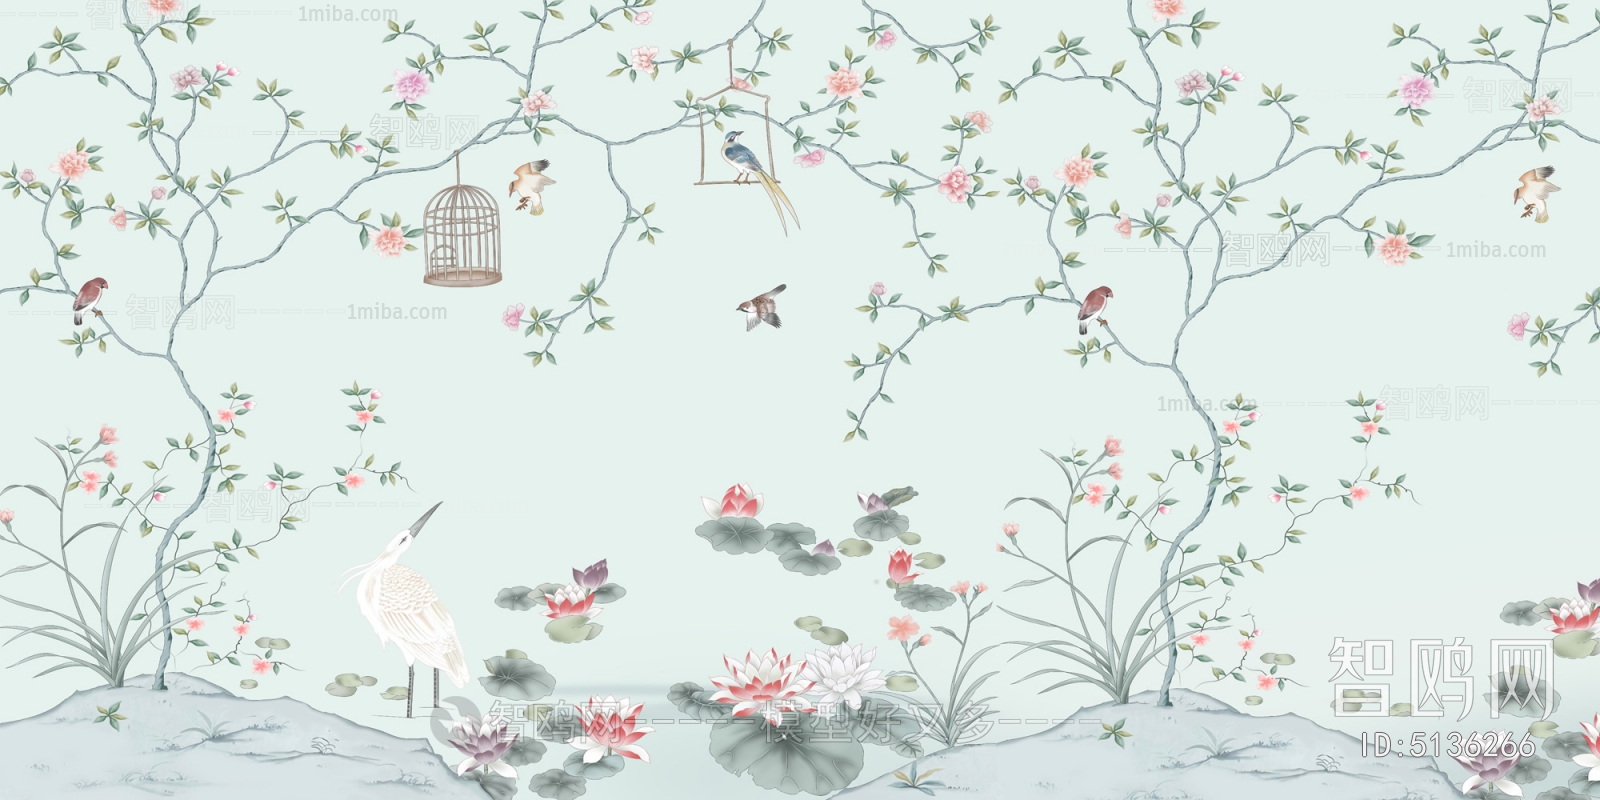 新中式花鸟装饰壁画